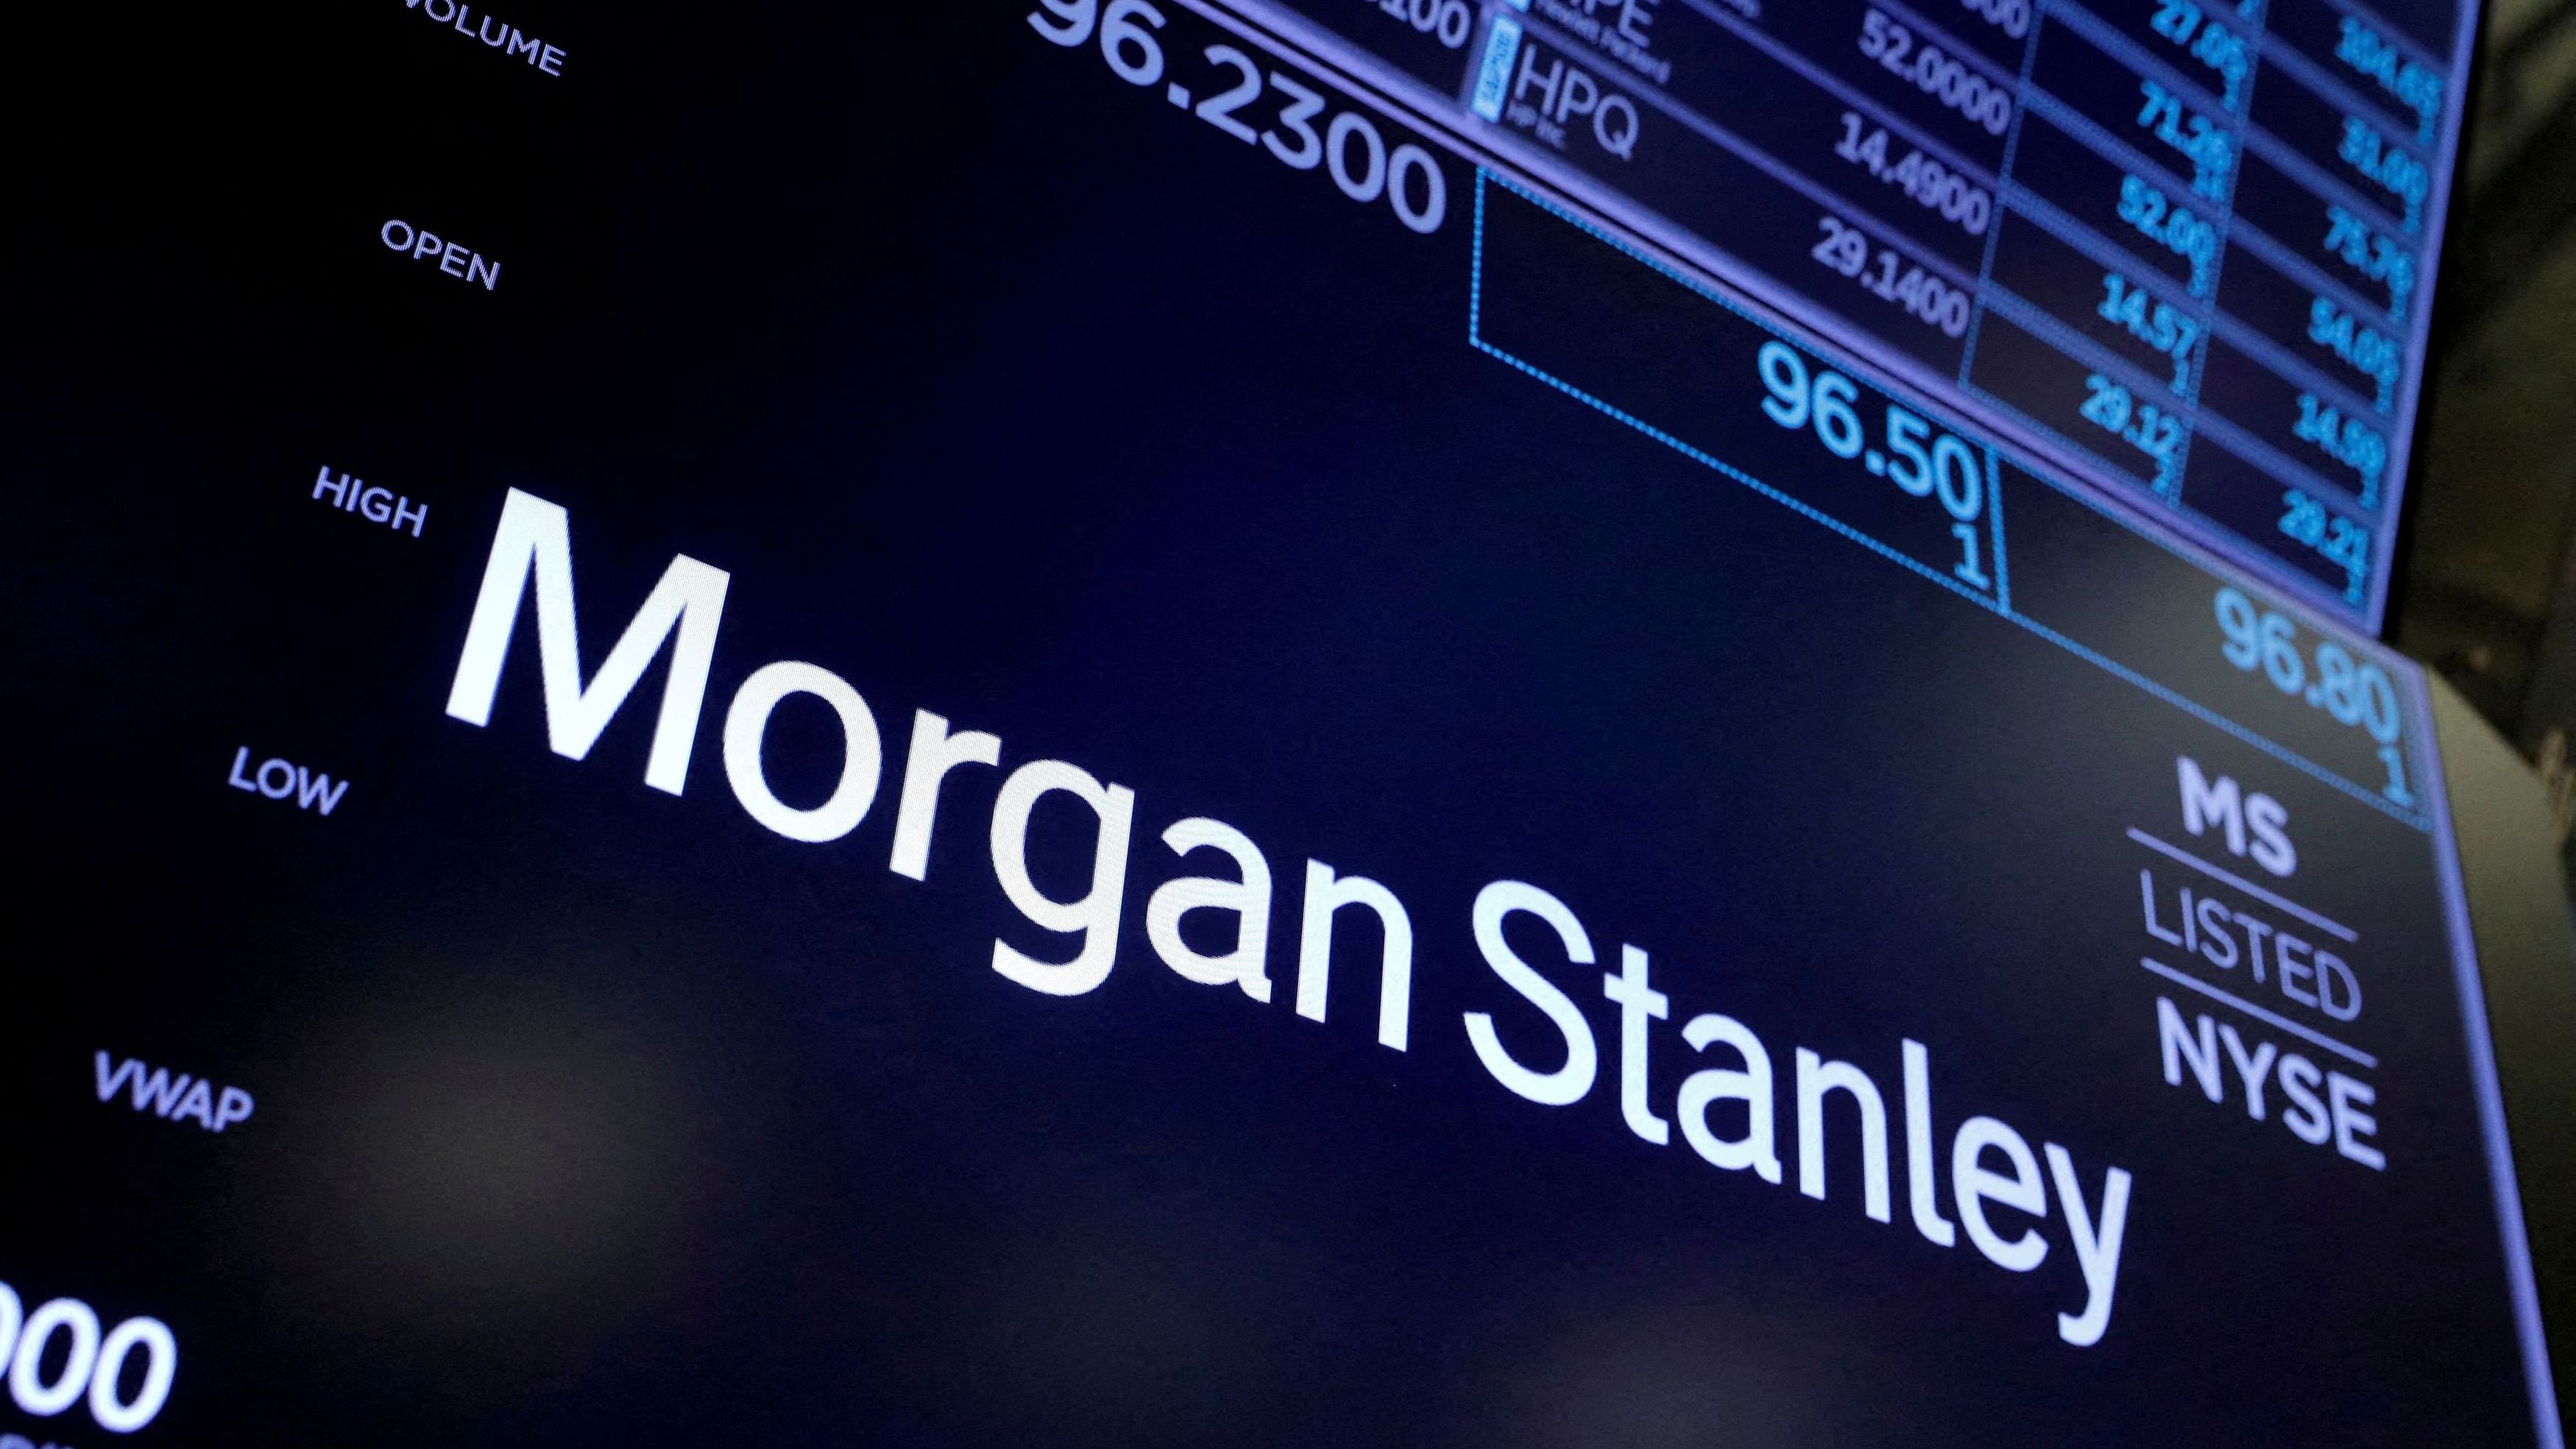 <div class="paragraphs"><p>The logo for Morgan Stanley.</p></div>